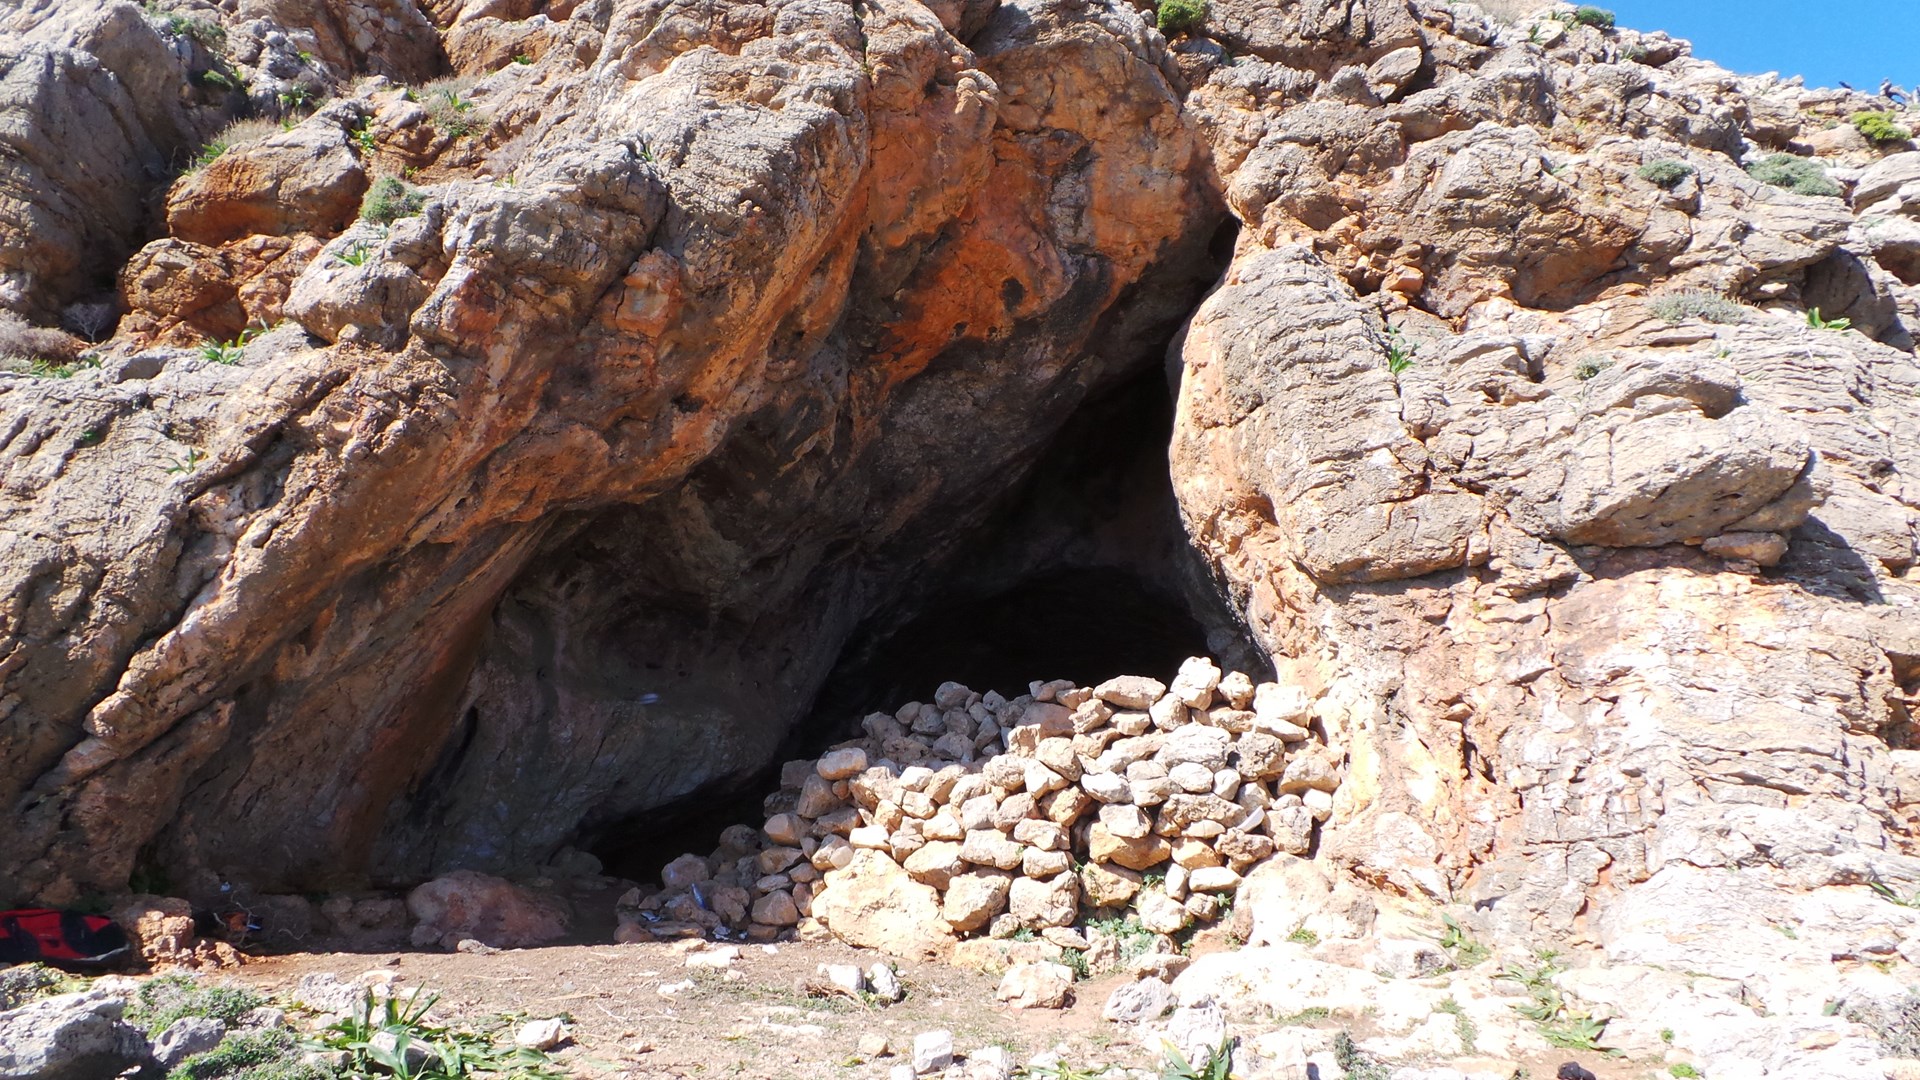 Απολογούνται 14 μέλη του κυκλώματος που κρατούσαν μετανάστες σε σπηλιές